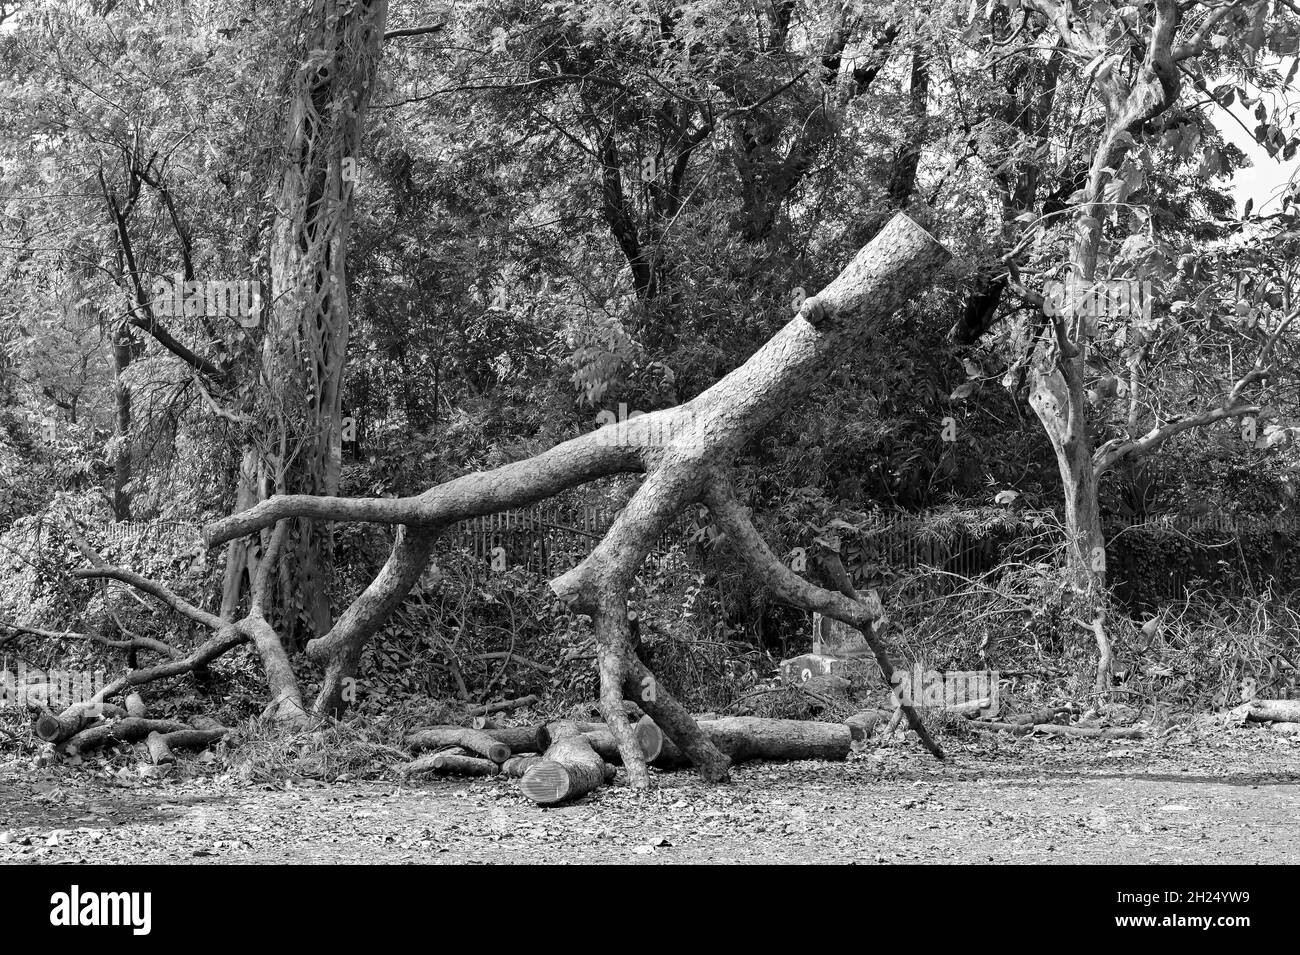 Tronc d'arbre noir et blanc coupé en scie, image symbolique de la destruction de la nature par la société civilisée.Changement climatique, menace pour l'environnement naturel. Banque D'Images